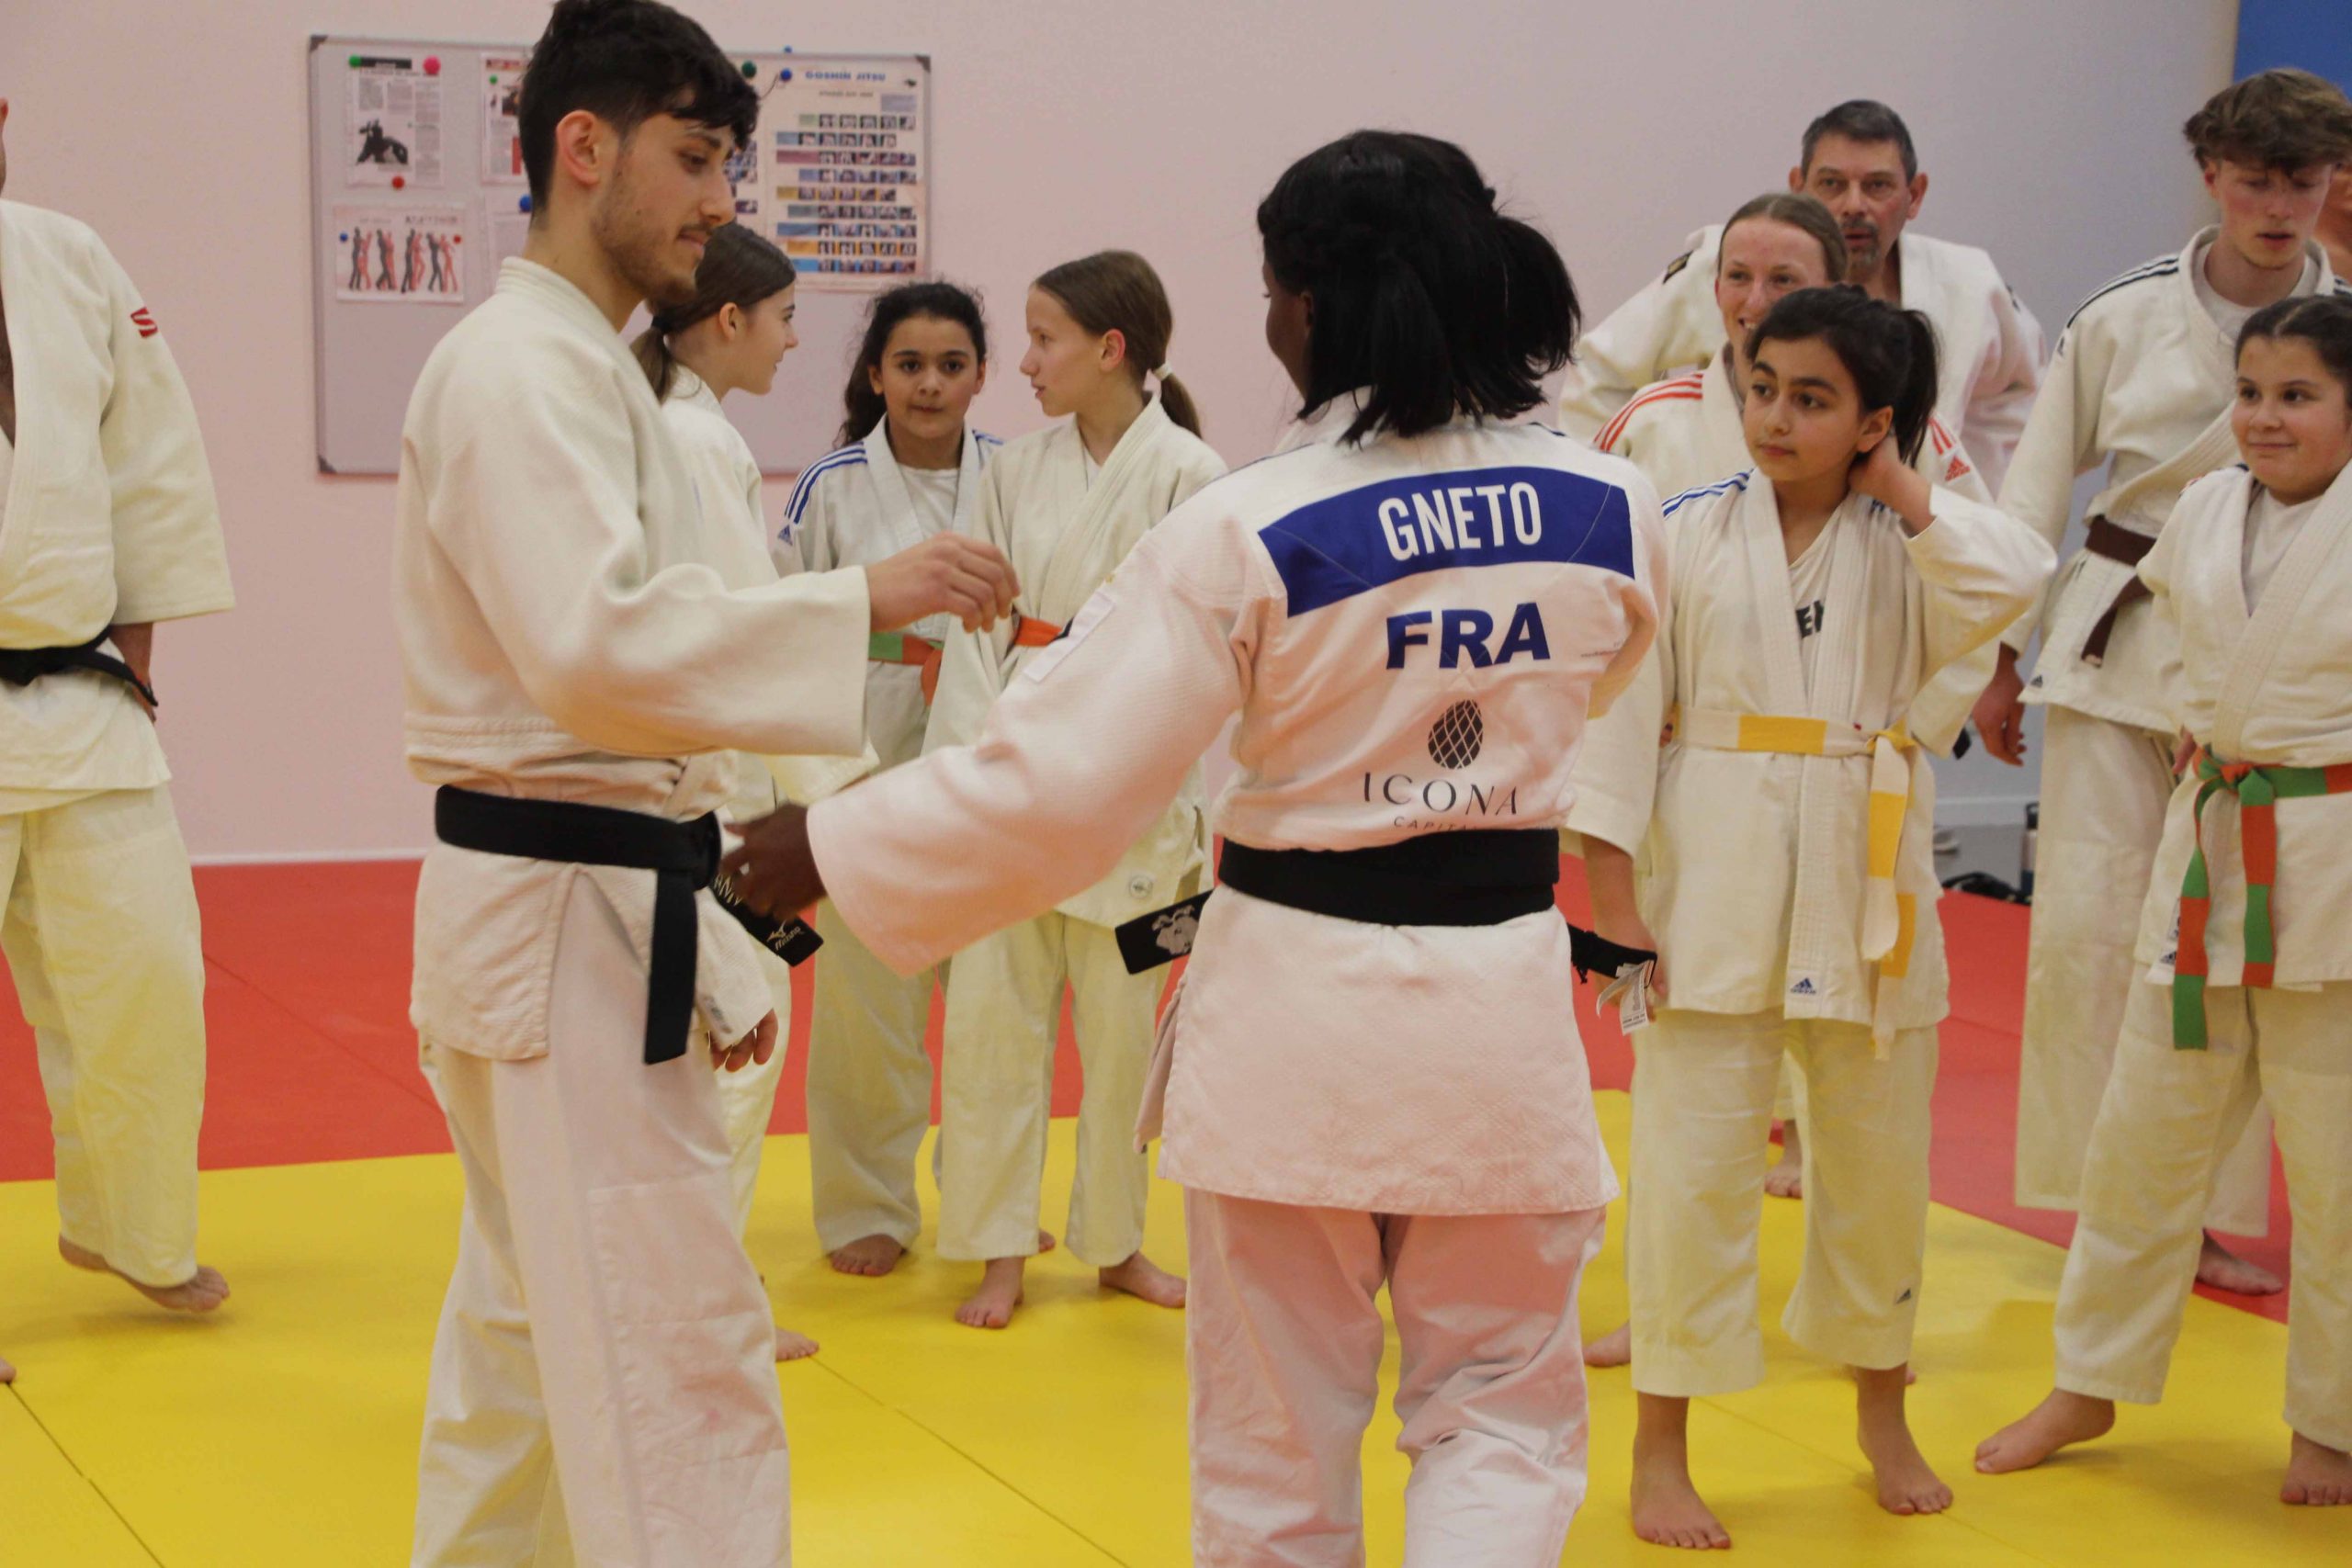 à partir de 13/14 ans l'activité prend ses lettres de noblesse pour devenir le JUDO. C'est le groupe ou les adolescents améliorent leurs judo auprès des adultes du club